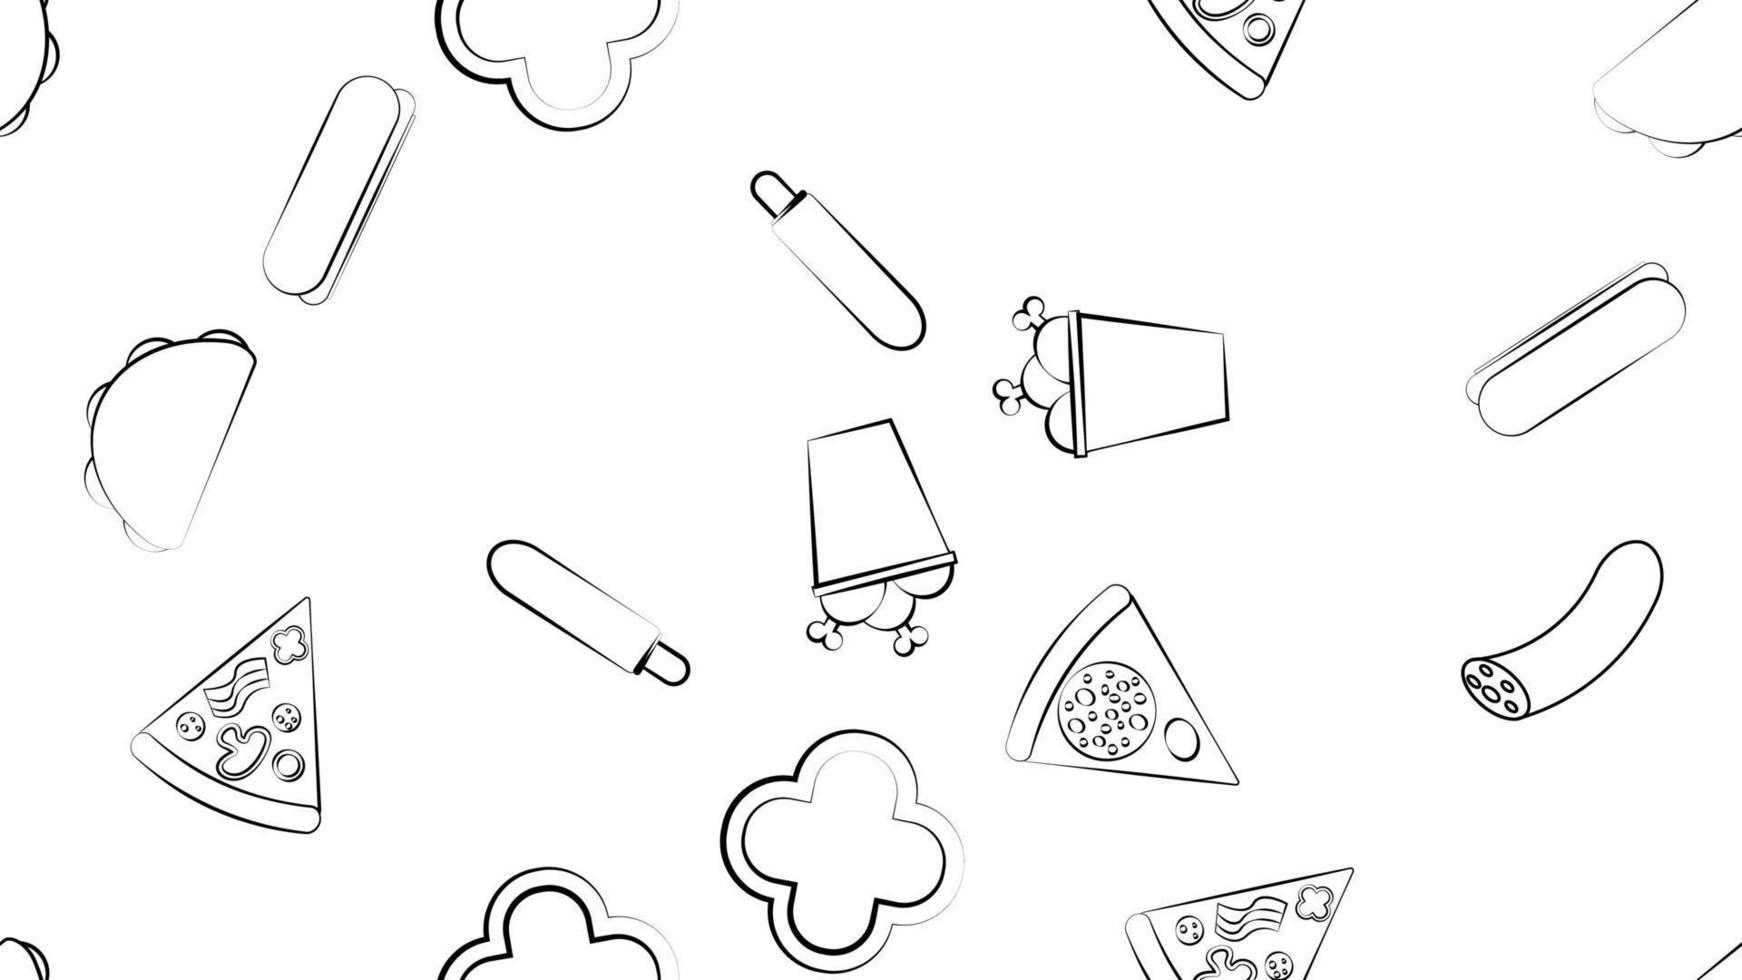 schwarz-weißes endloses nahtloses muster von lebensmittel- und snackartikeln, die für restaurantbar-café-pizza, hotdog, burrito, wurst, hähnchen gesetzt werden. der Hintergrund vektor